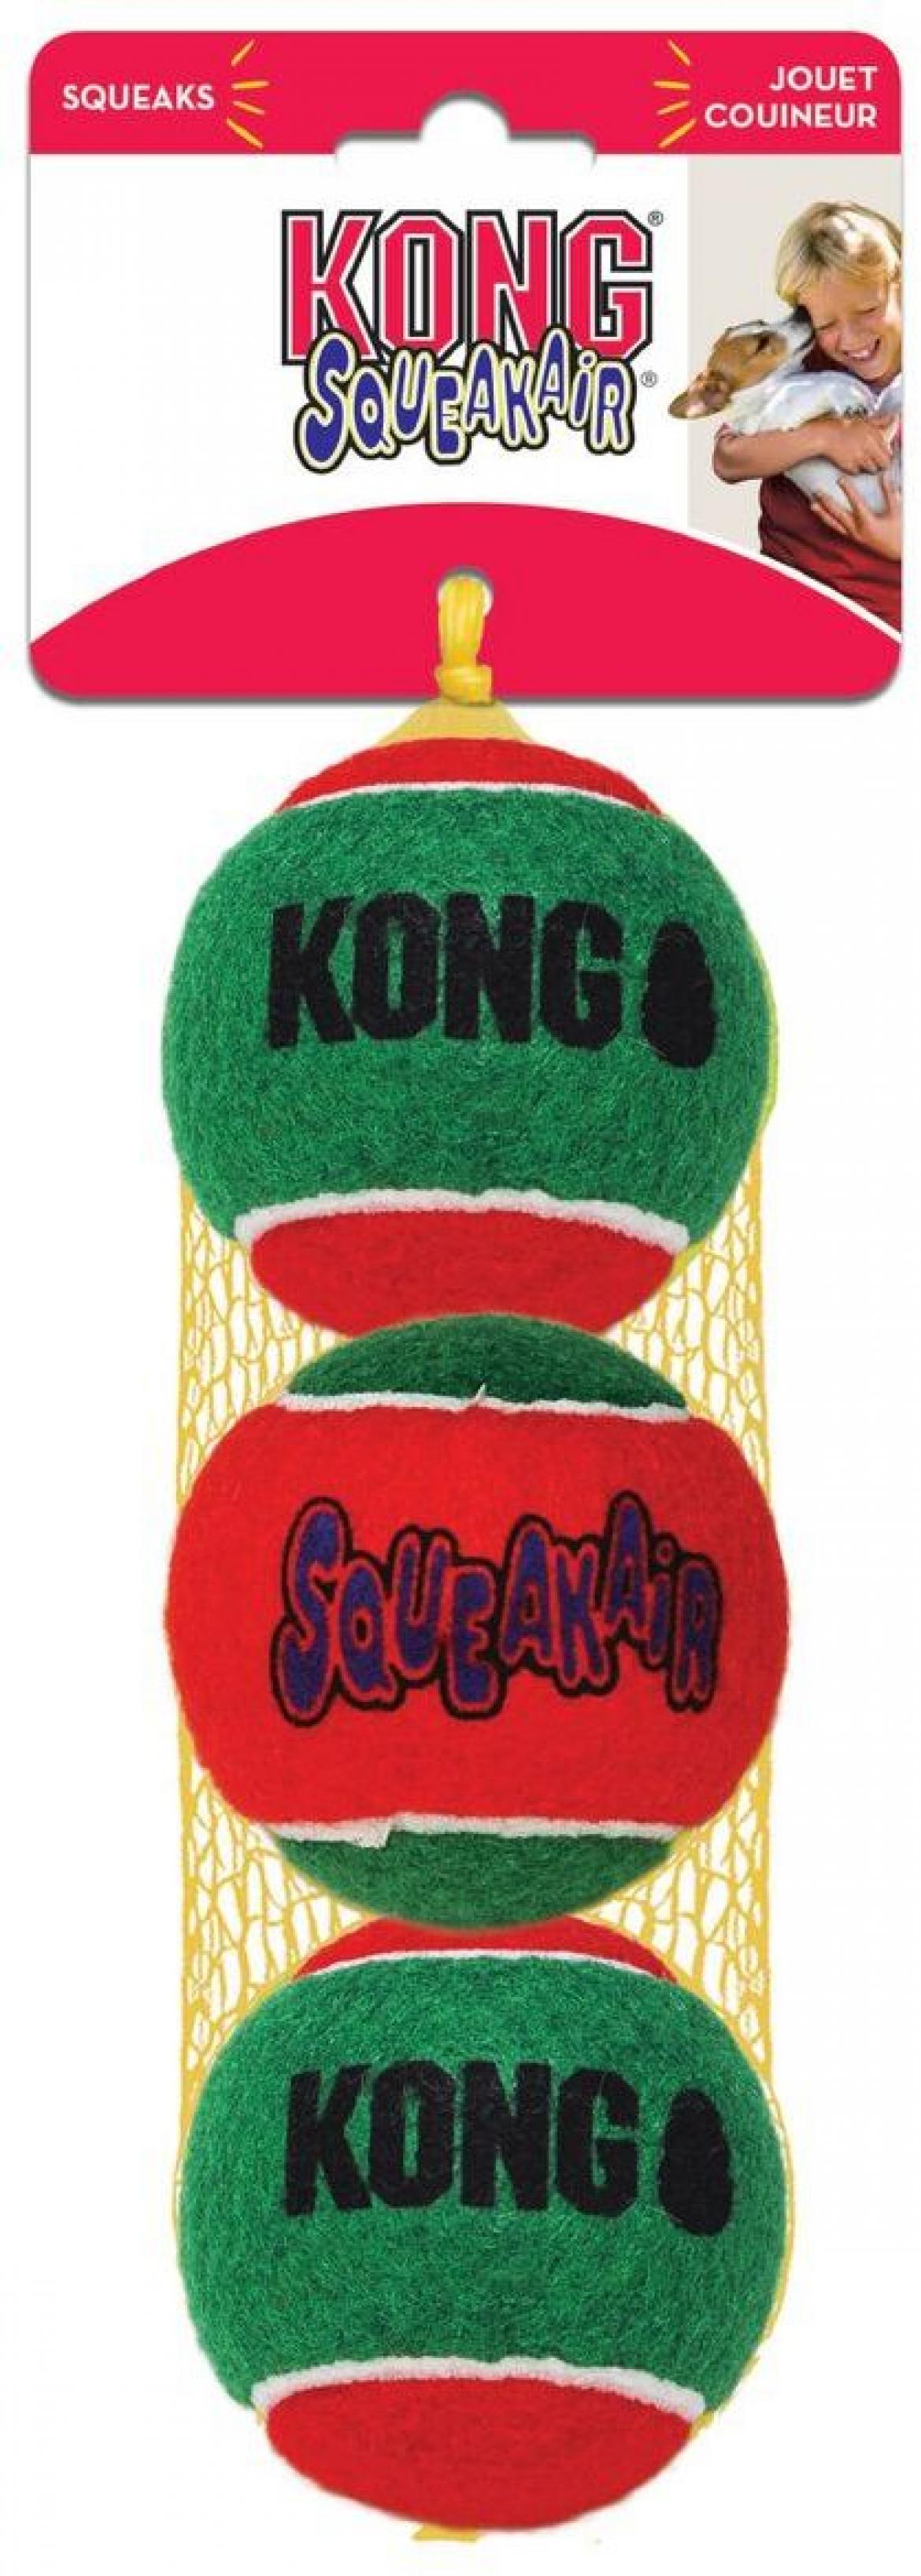 KONG Holiday игрушка для собак Теннисный мячик 3 шт. средние 6 см, H18D133E